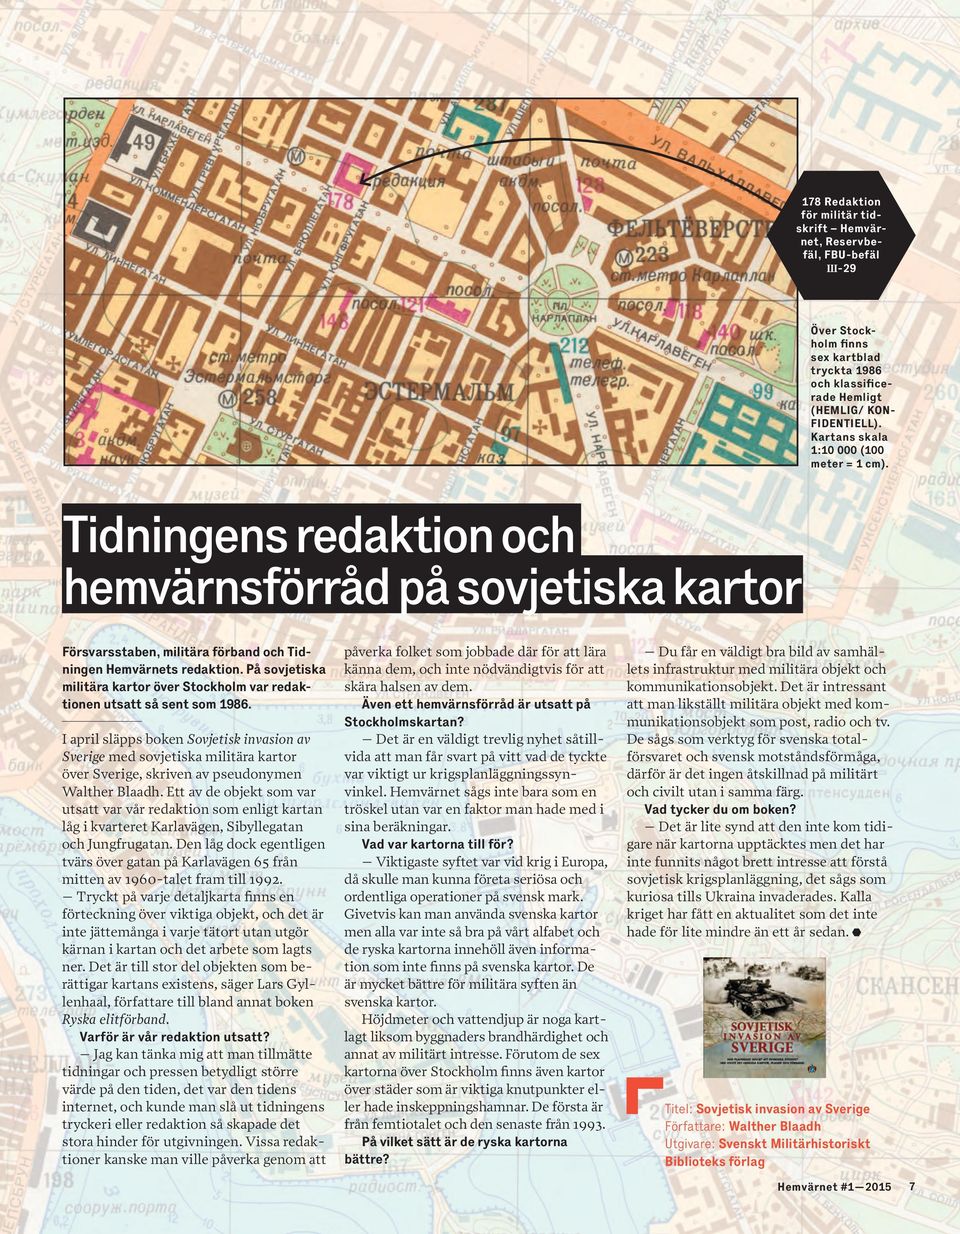 På sovjetiska militära kartor över Stockholm var redaktionen utsatt så sent som 1986.